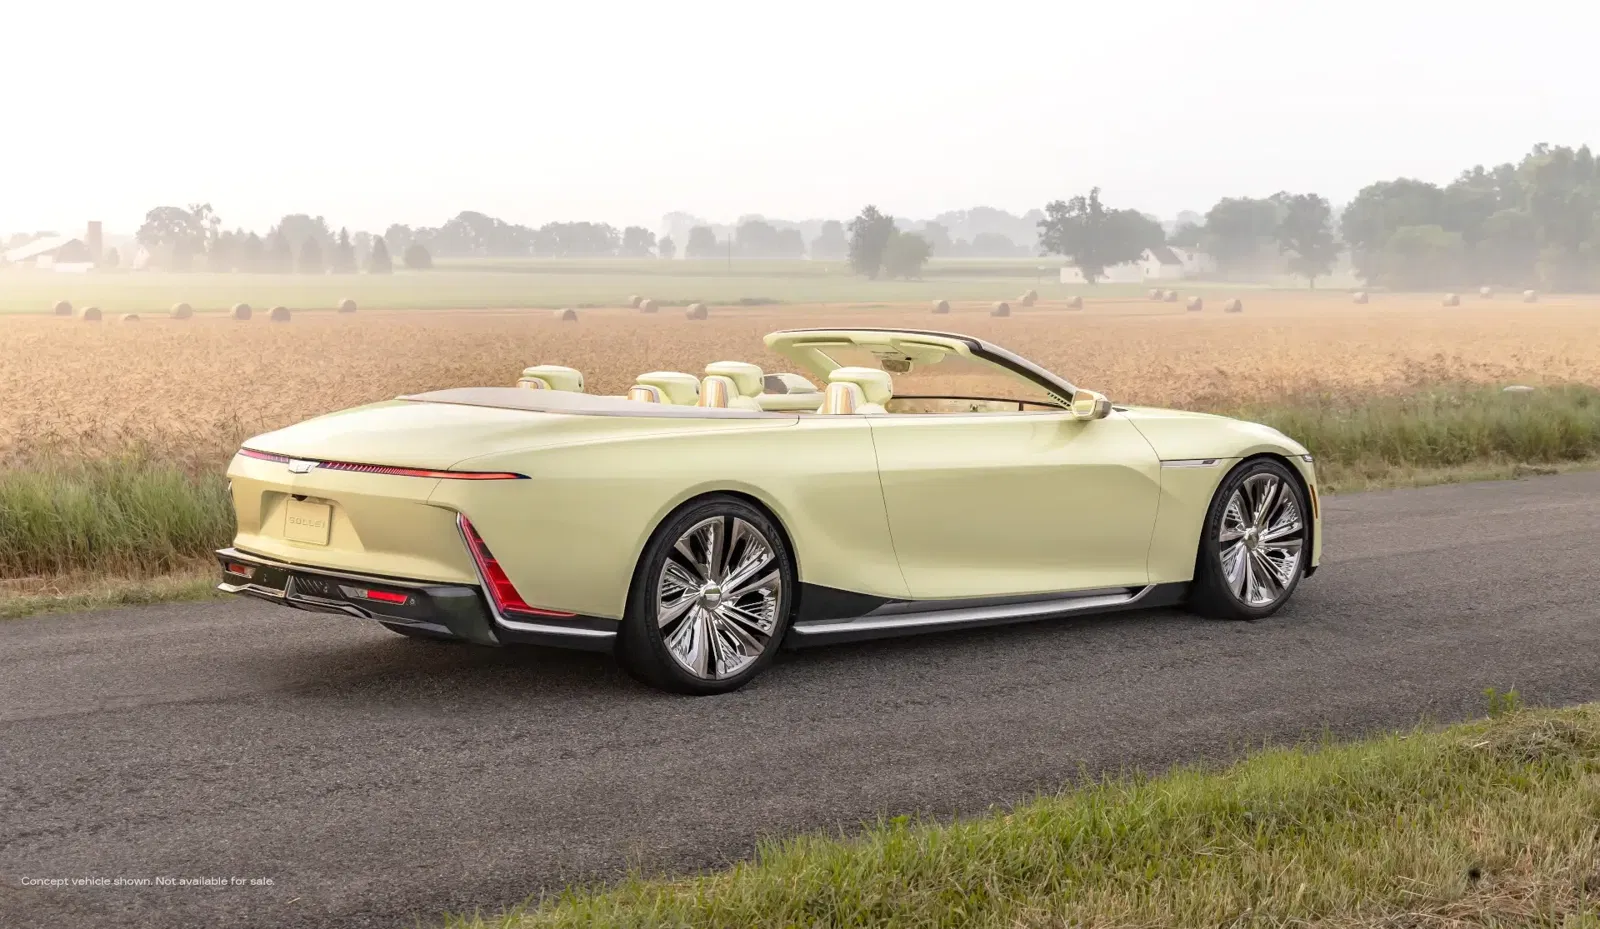 Cadillac-Studie: Luxus-Elektro-Cabrio Sollei hat auch Schampus an Bord